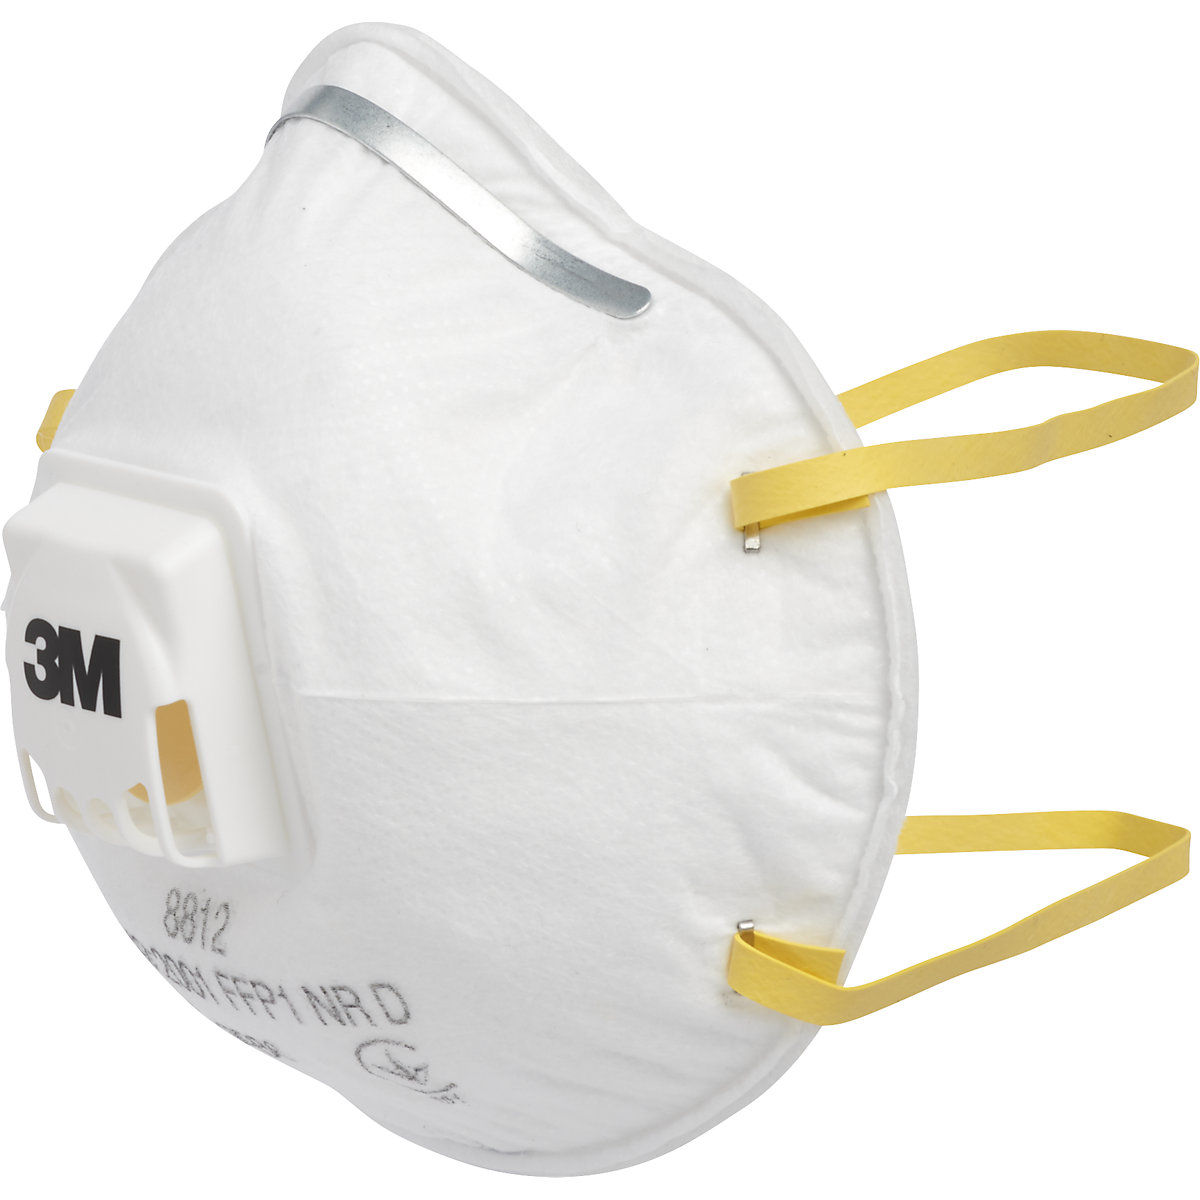 3M Atemschutzmaske 8812 FFP1 NR D mit Ausatemventil, VE 10 Stück, weiß